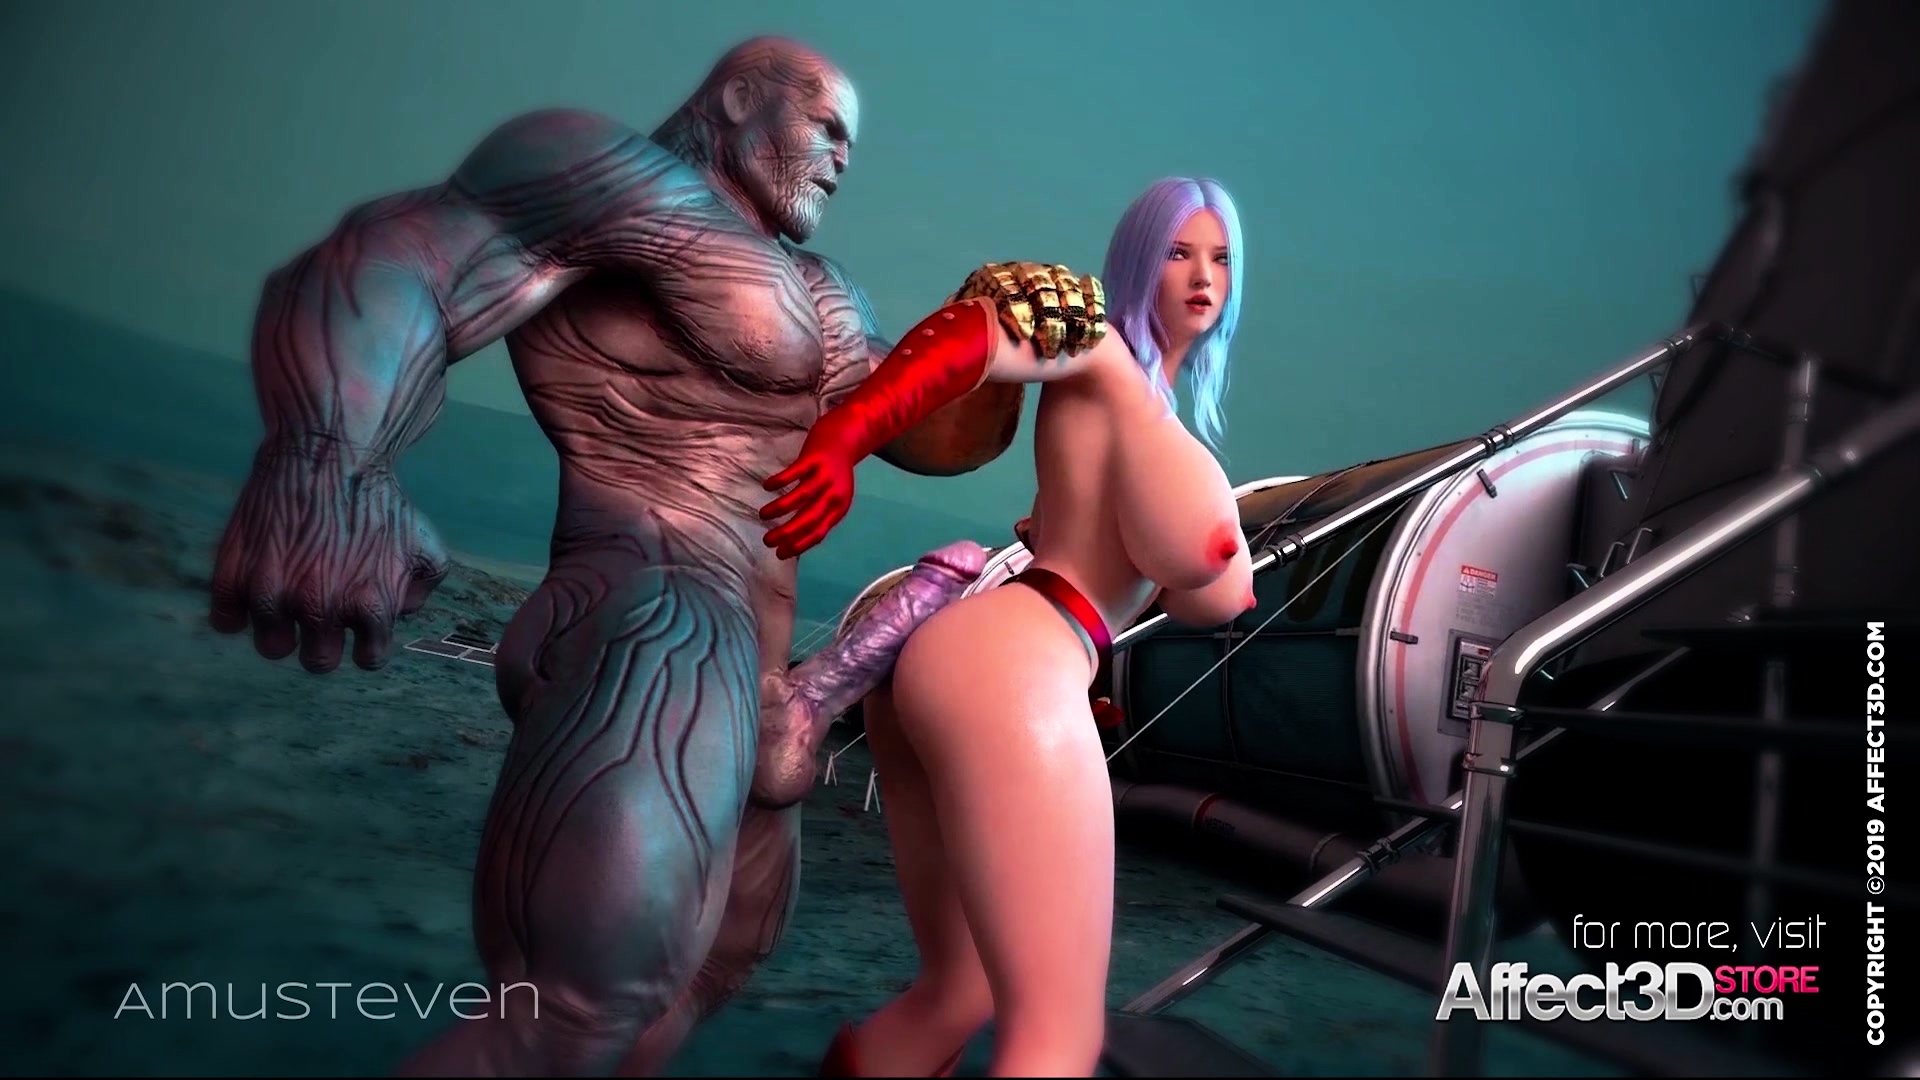 3d Avengers Porn - Free Mobile Porn Videos - The Lust Avenger 3d Animation - 3529980 -  VipTube.com